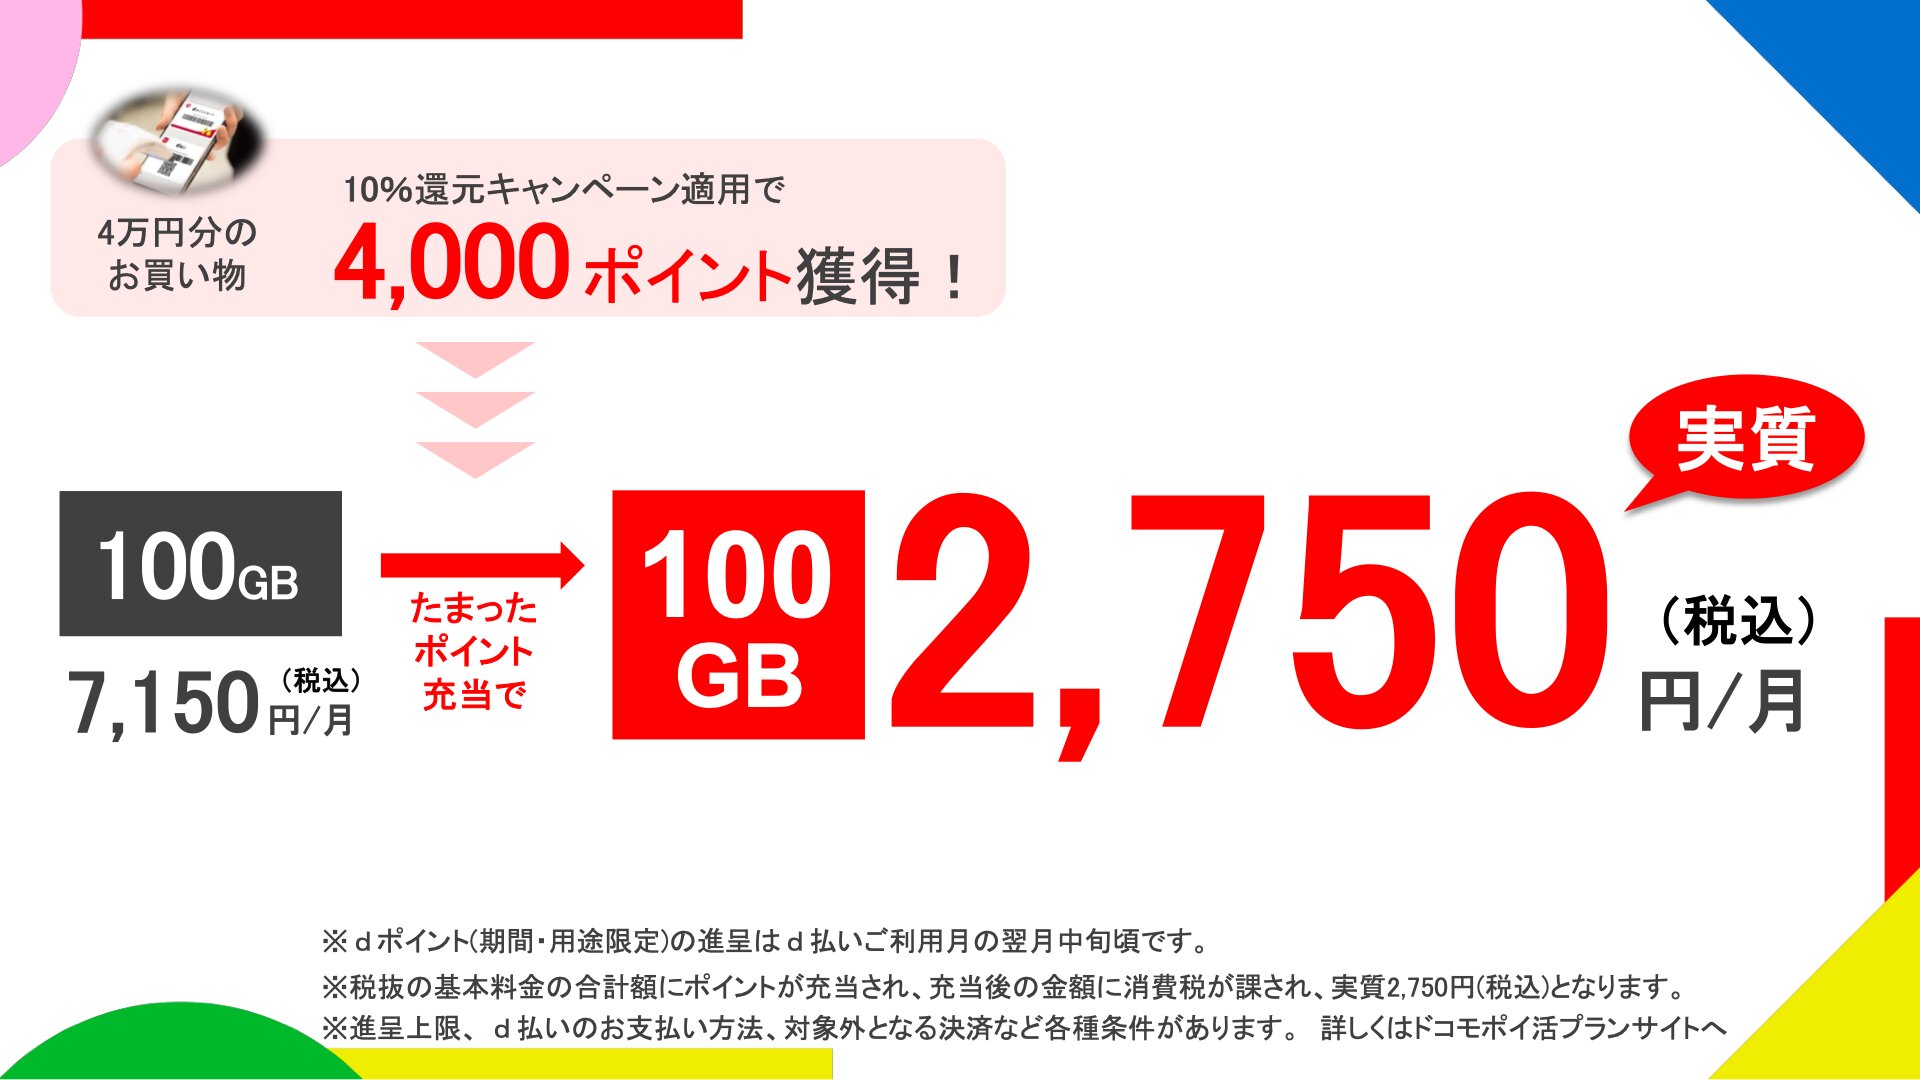 ポイント還元を考慮すると、100GBのデータを実質2750円で使えるという（NTTドコモ提供資料より）